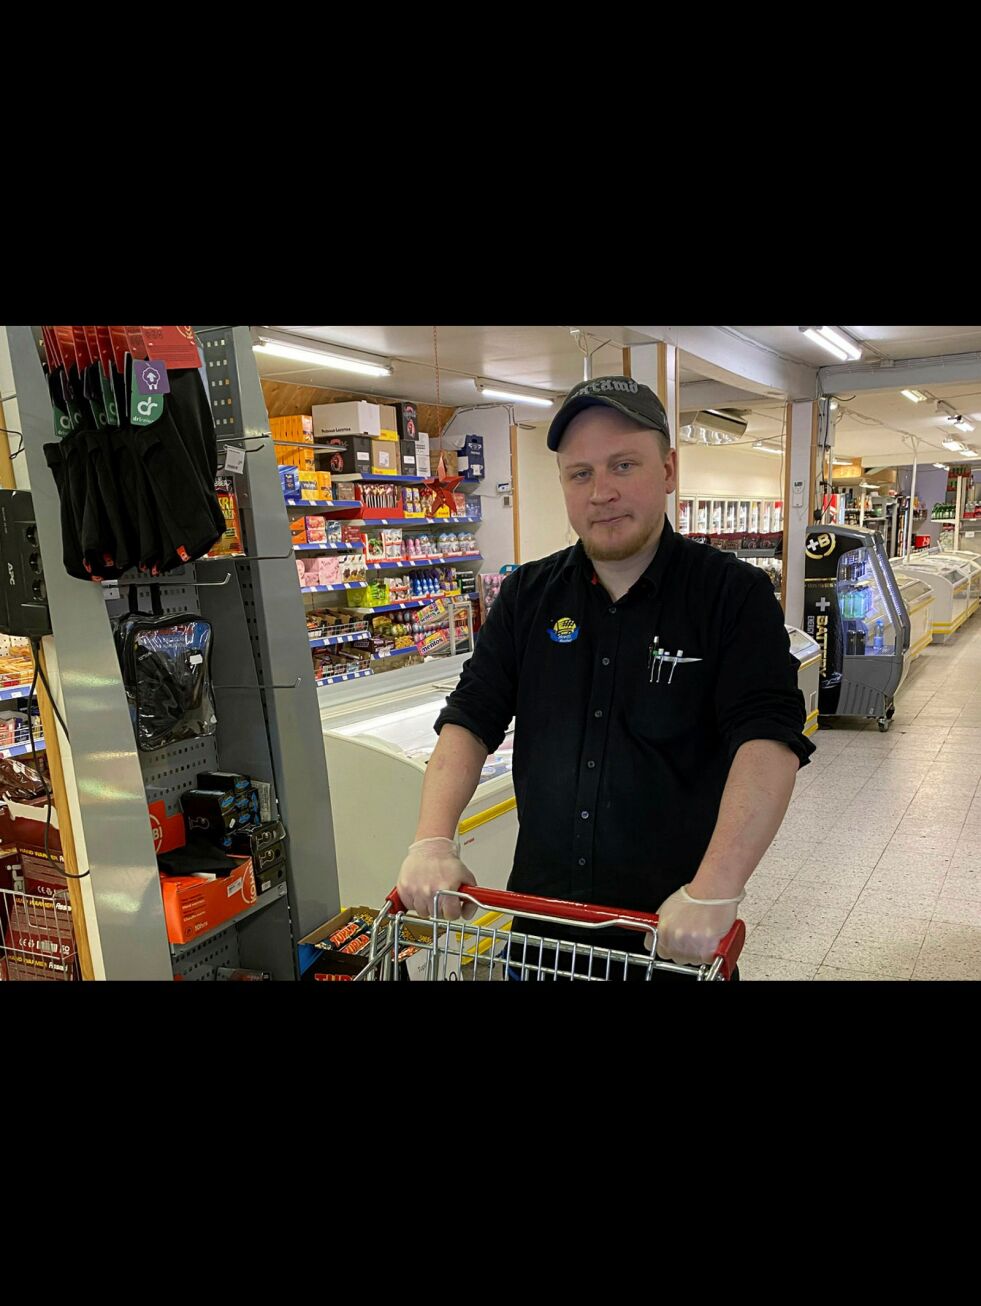 Juha Kekäle gjør her klar en bestilling til en kunde som får varer kjørt hjem på bestilling. Noen kunder bor 120 kilometer unna butikken. Foto Janna Kekäle